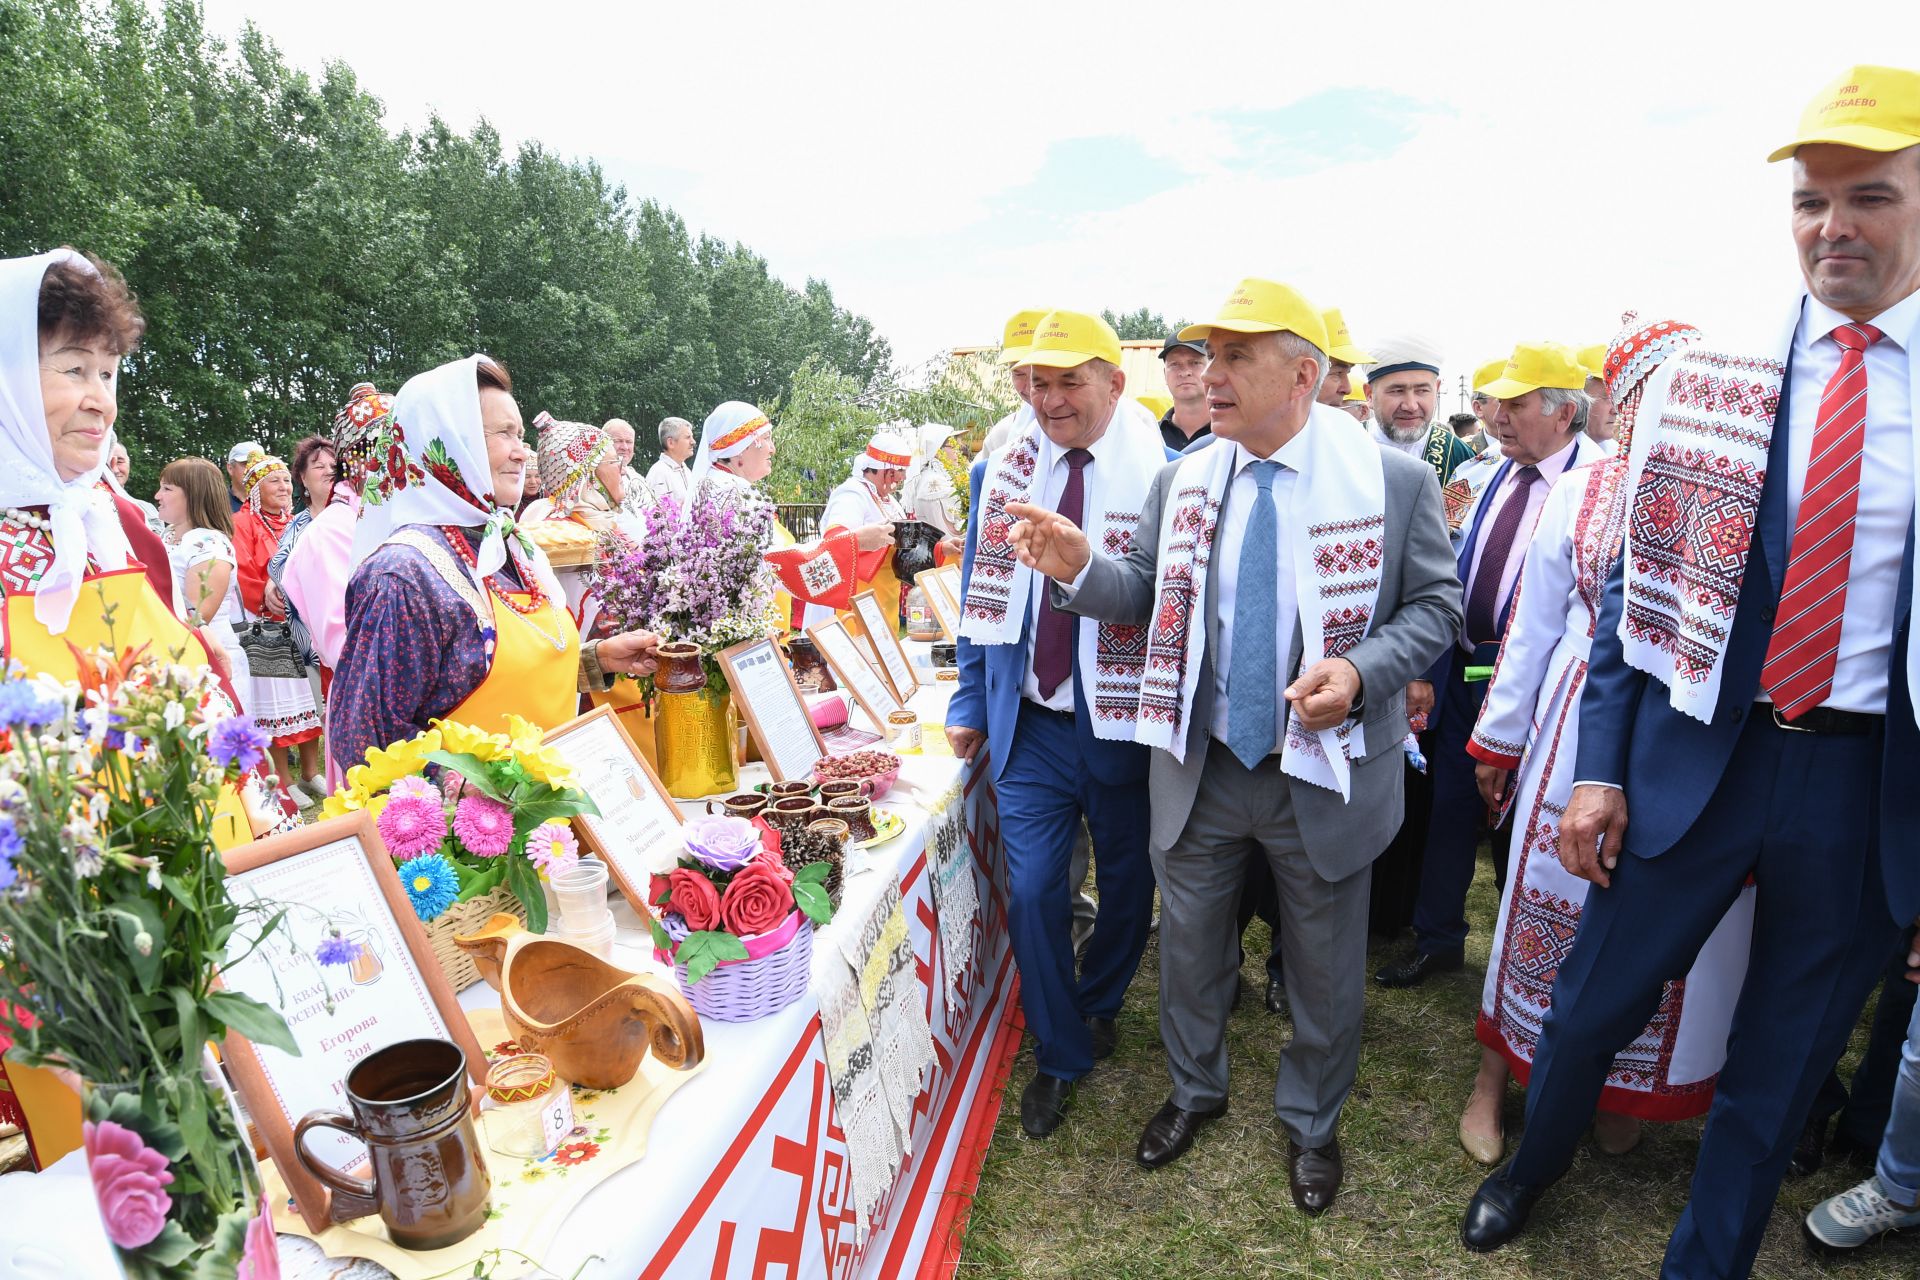 Алькеевцы участвовали во Всероссийском празднике Уяв, прошедшем в Аксубаево